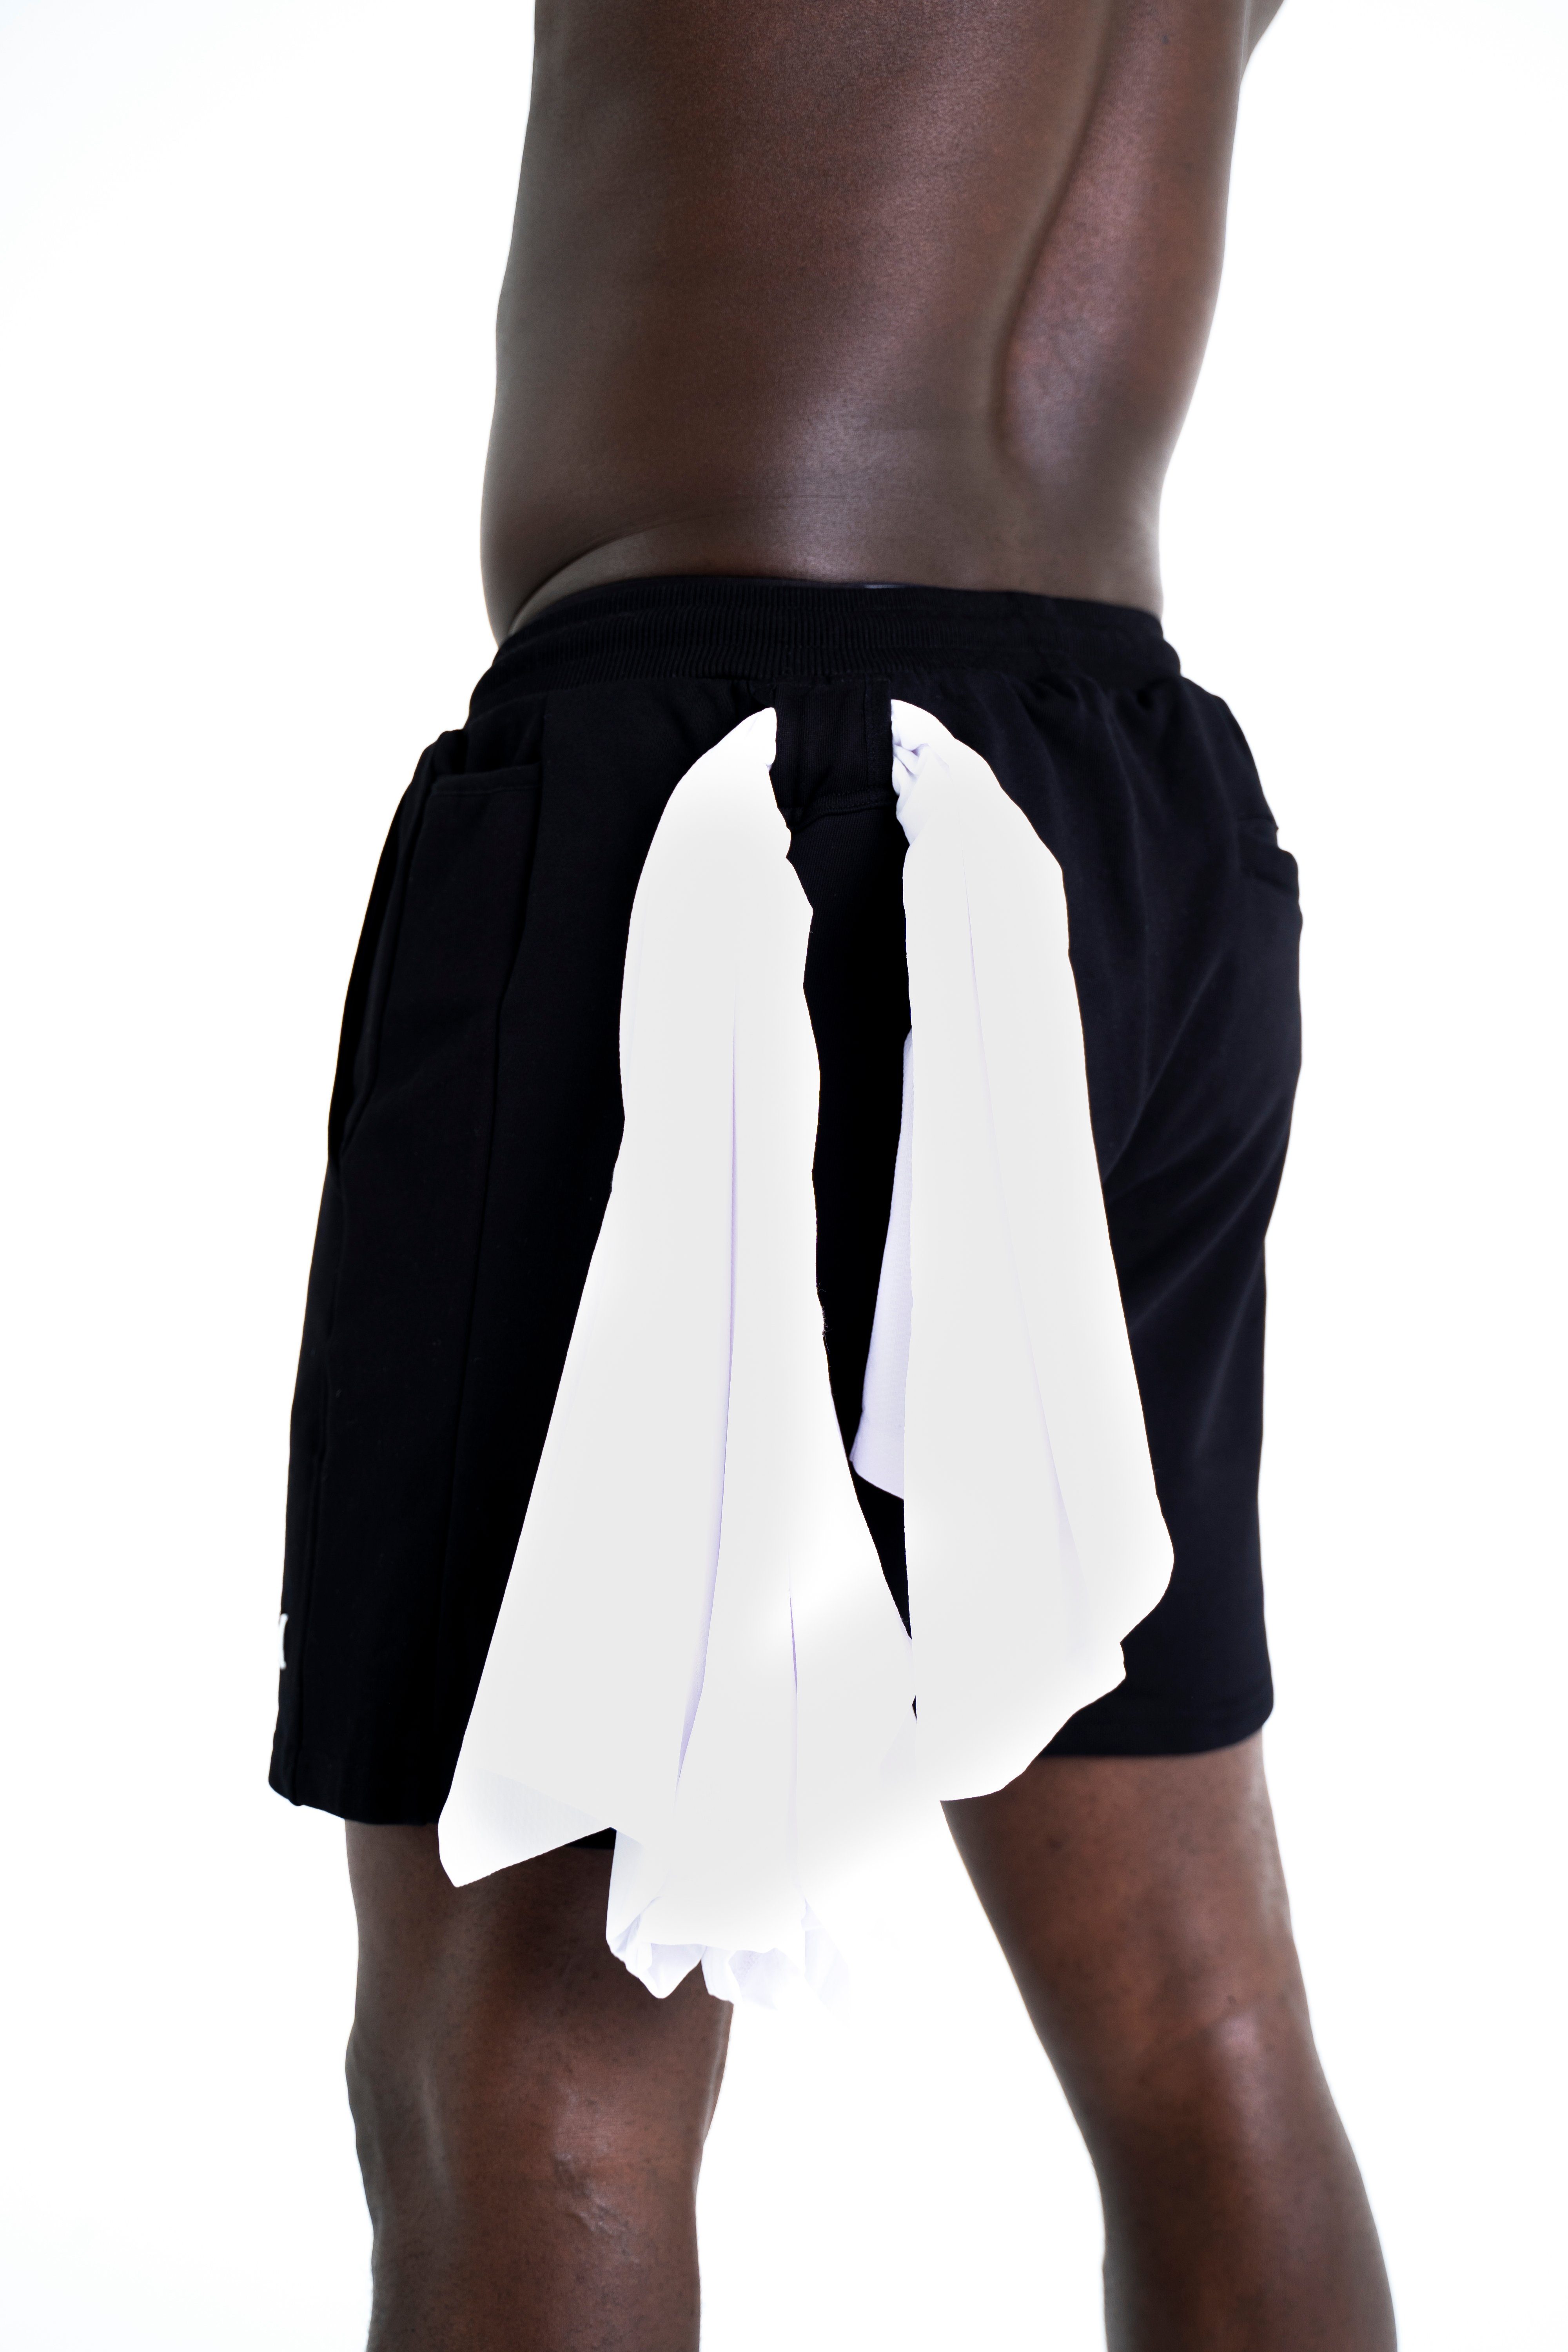 Freizeit Shorts Fitness Sportwear Cotton Weiß Sport, Shorts Modern für Sweatshorts Universum und Kurze